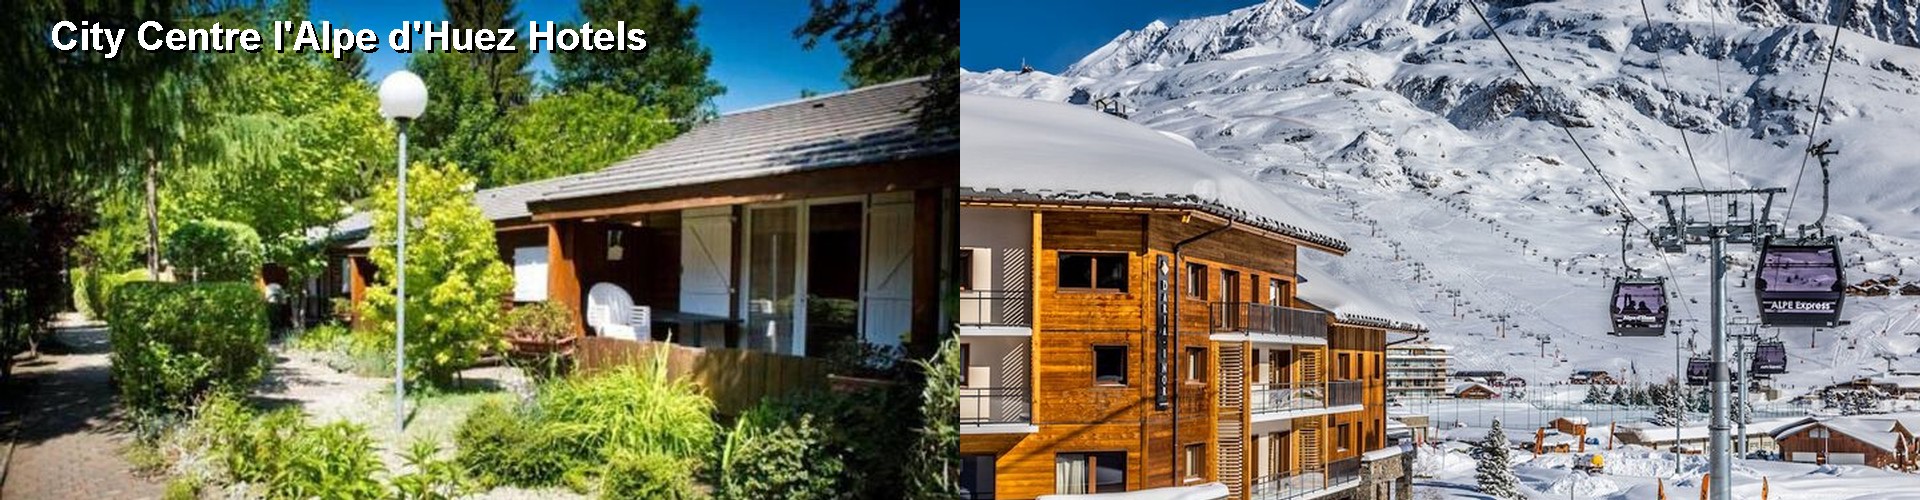 5 Best Hotels near City Centre l'Alpe d'Huez